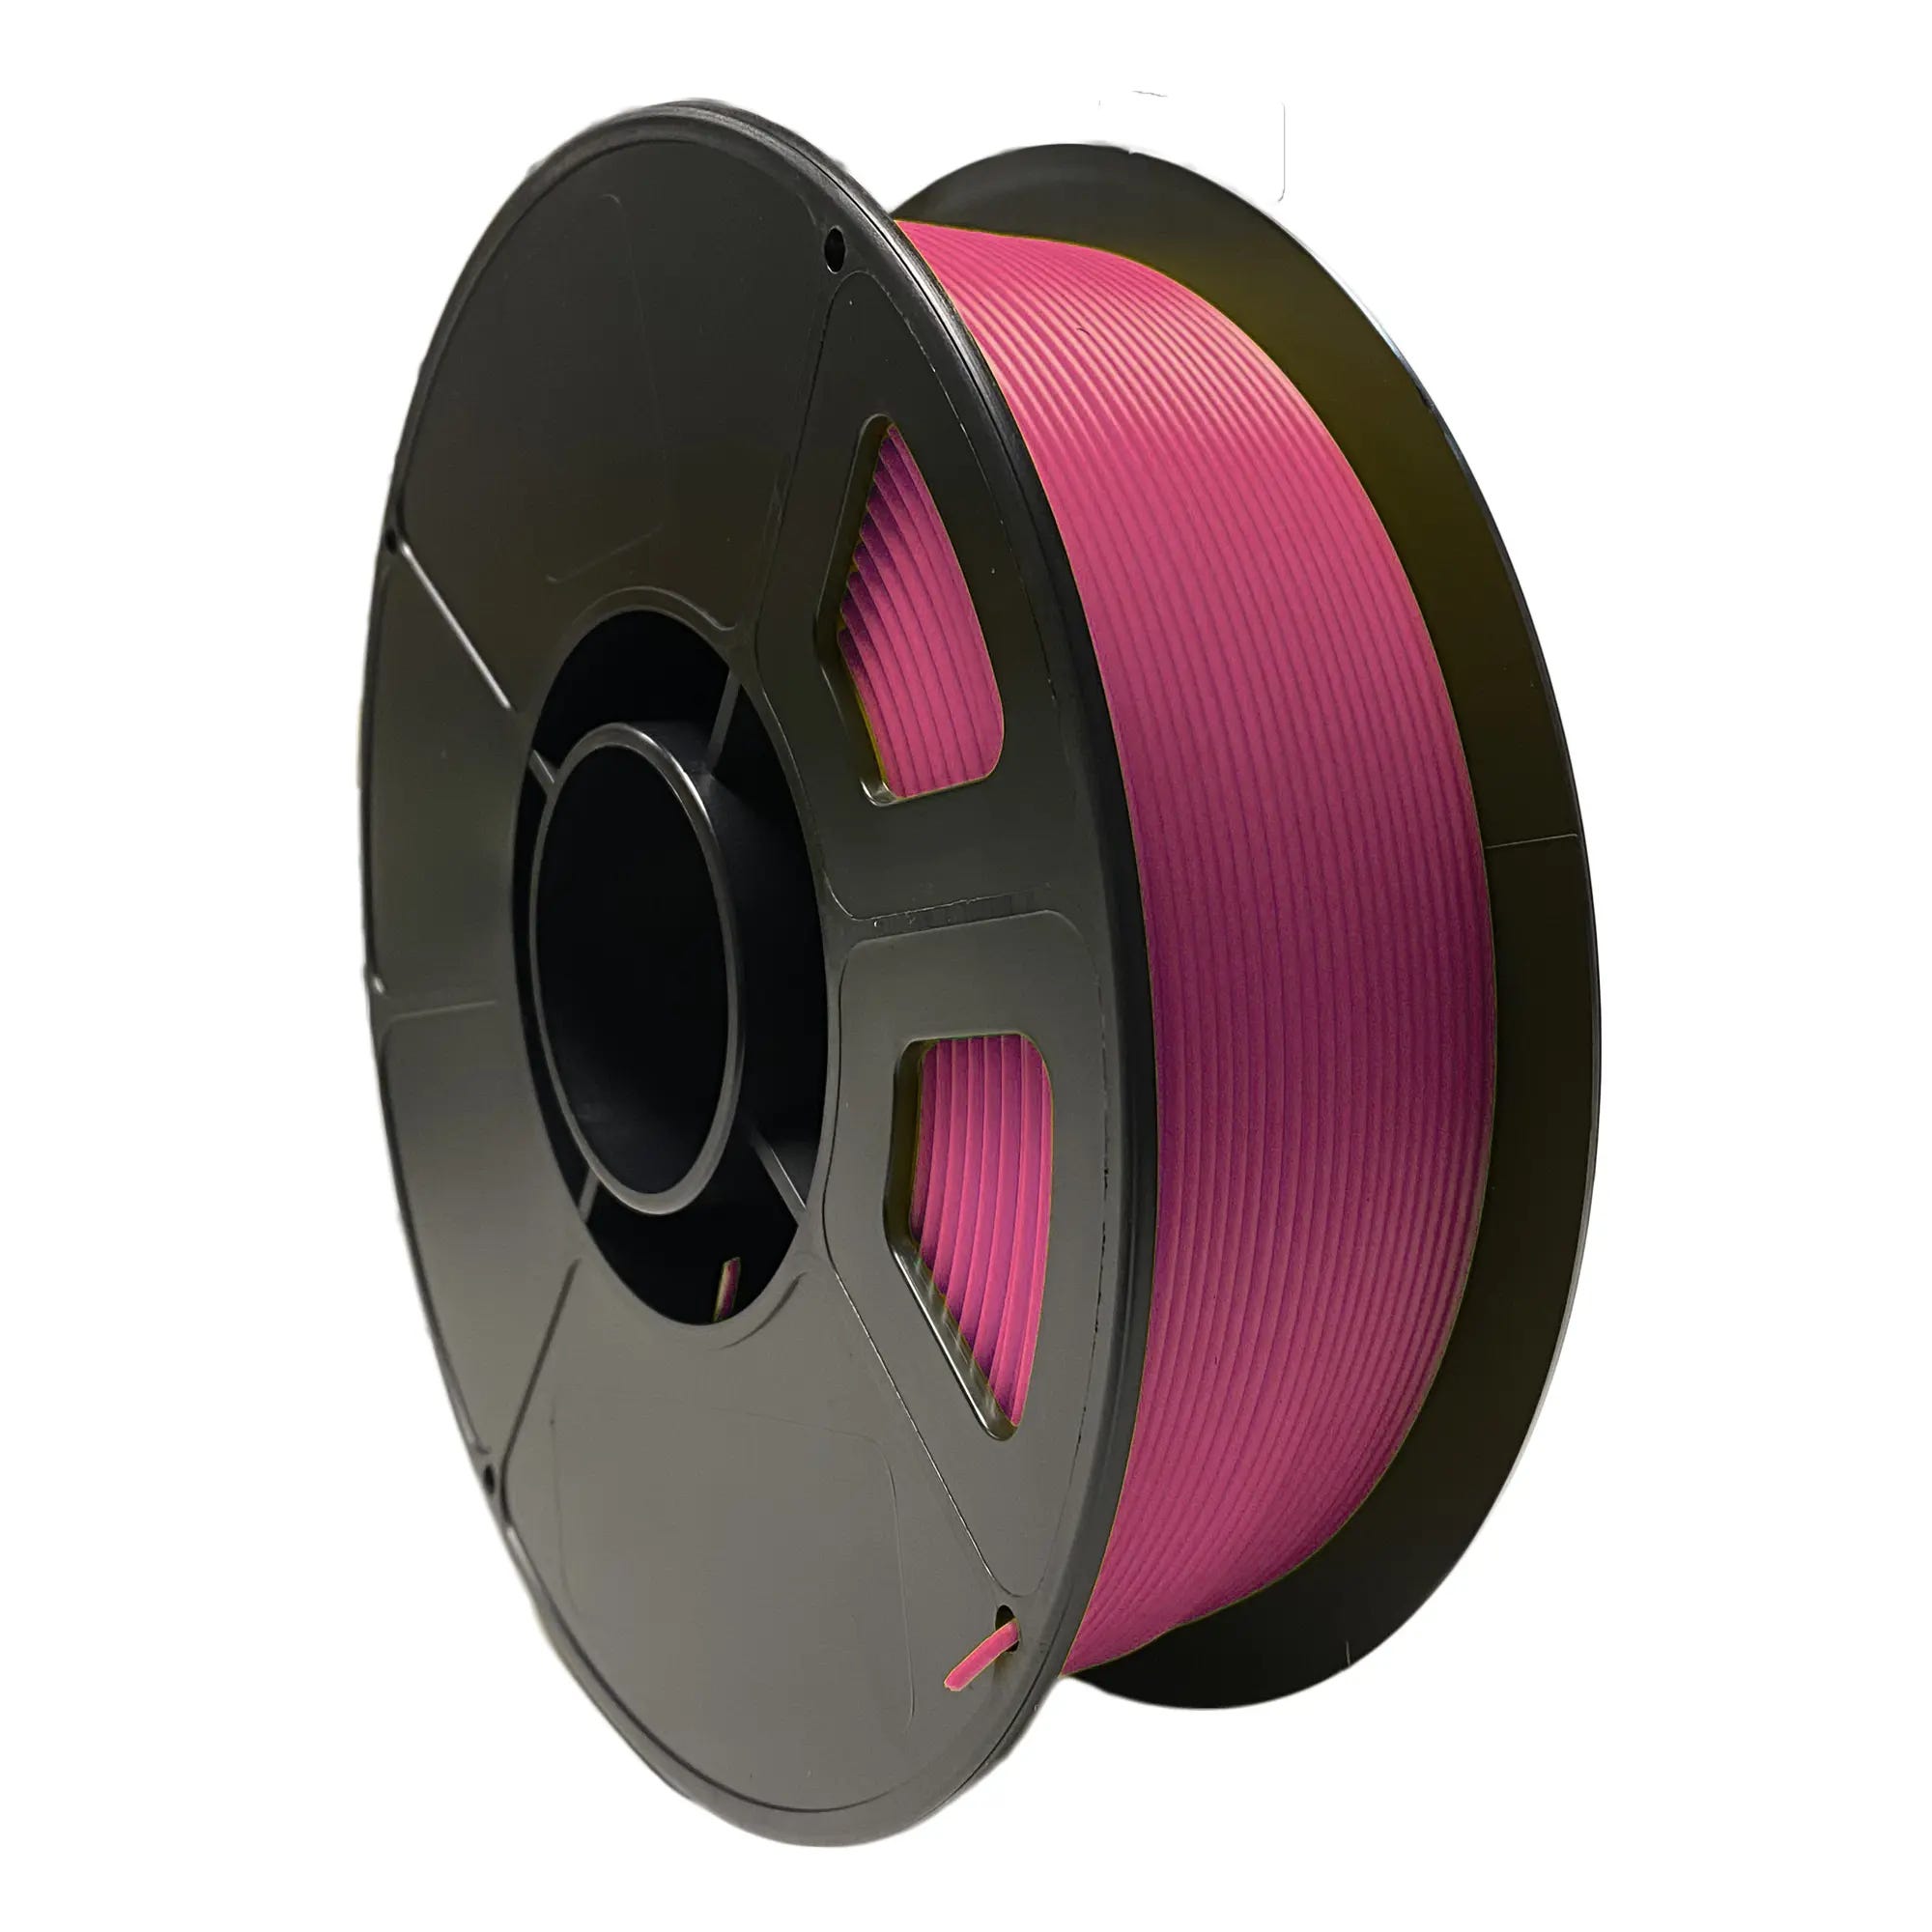 Bobina de filamento para impresora 3D y bolígrafo - Polaroid